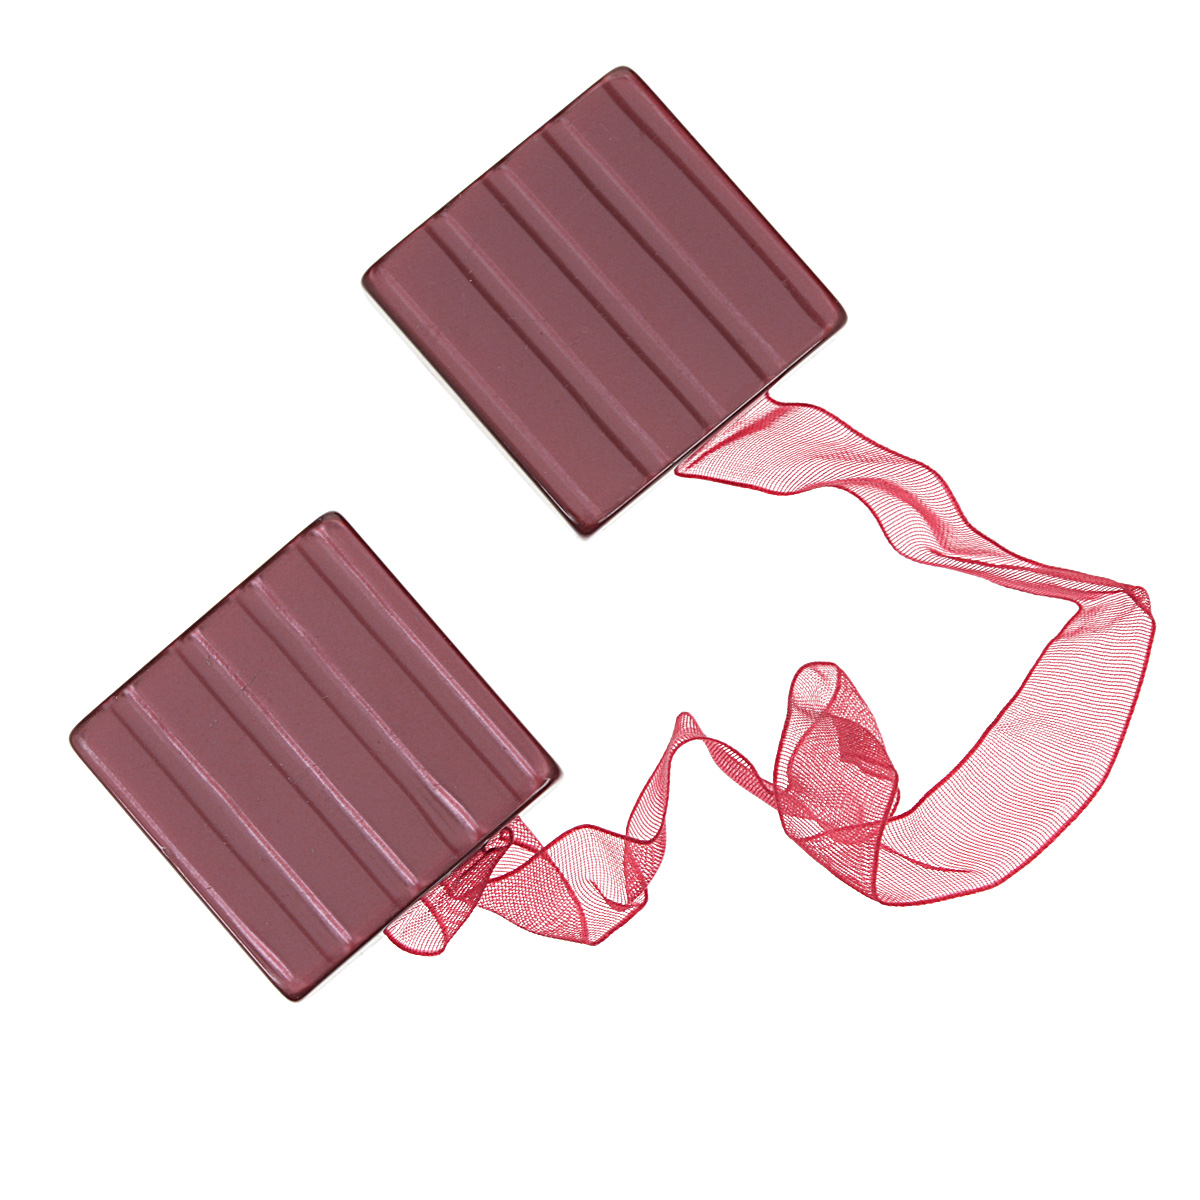 Клипса-магнит для штор "Calamita Fiore", цвет: темно-розовый. 7704024_632